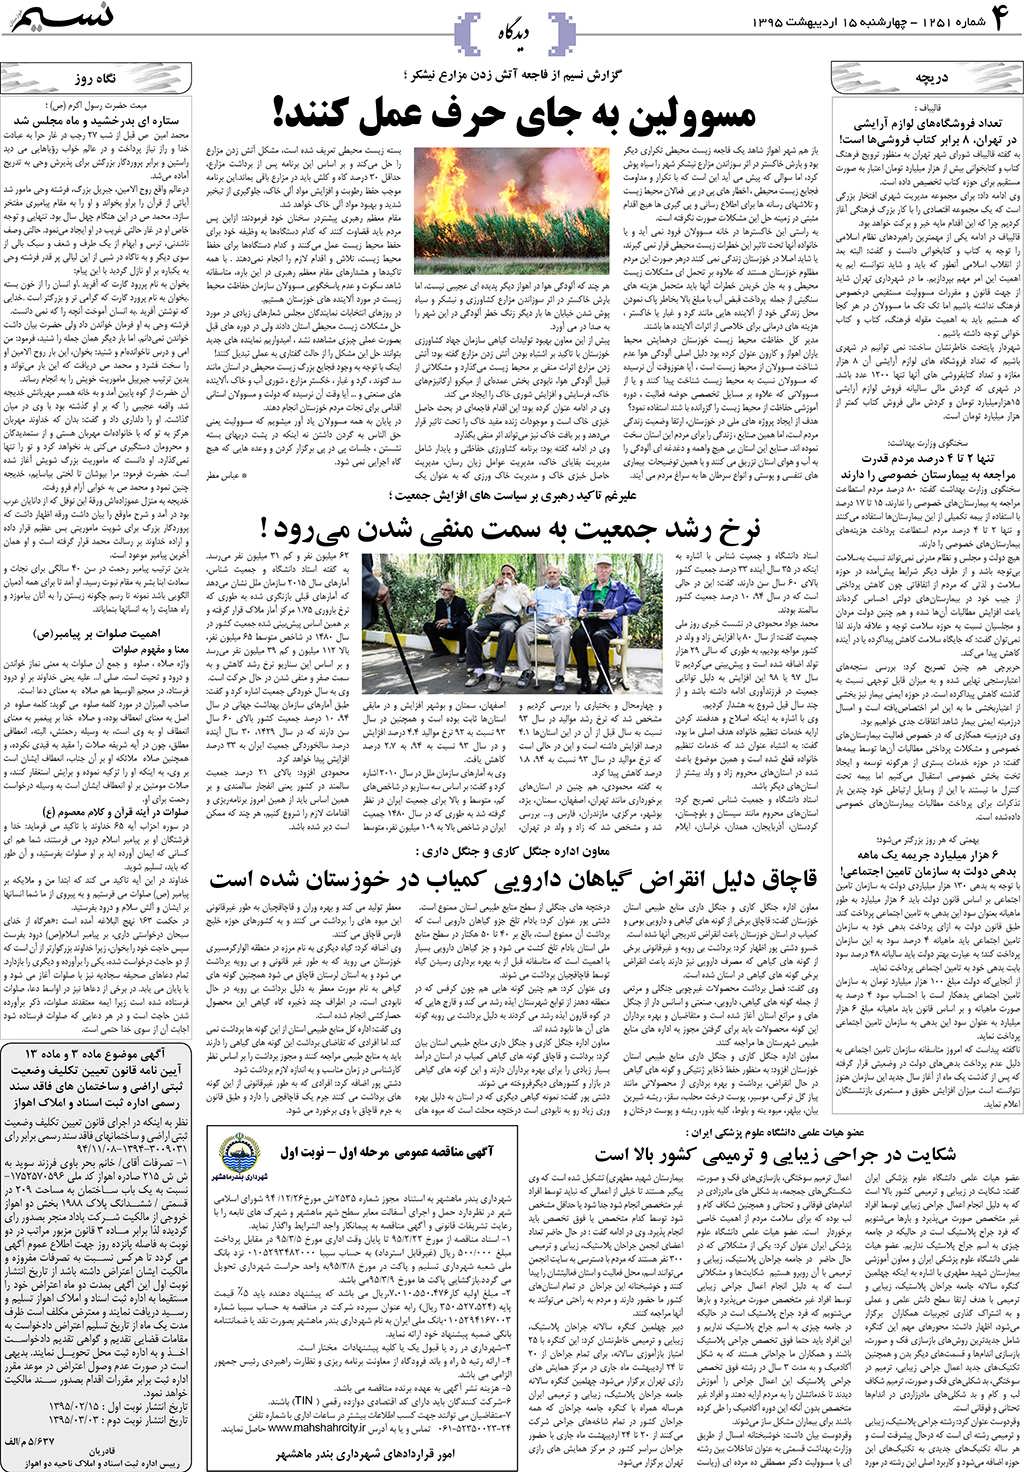 صفحه دیدگاه روزنامه نسیم شماره 1251